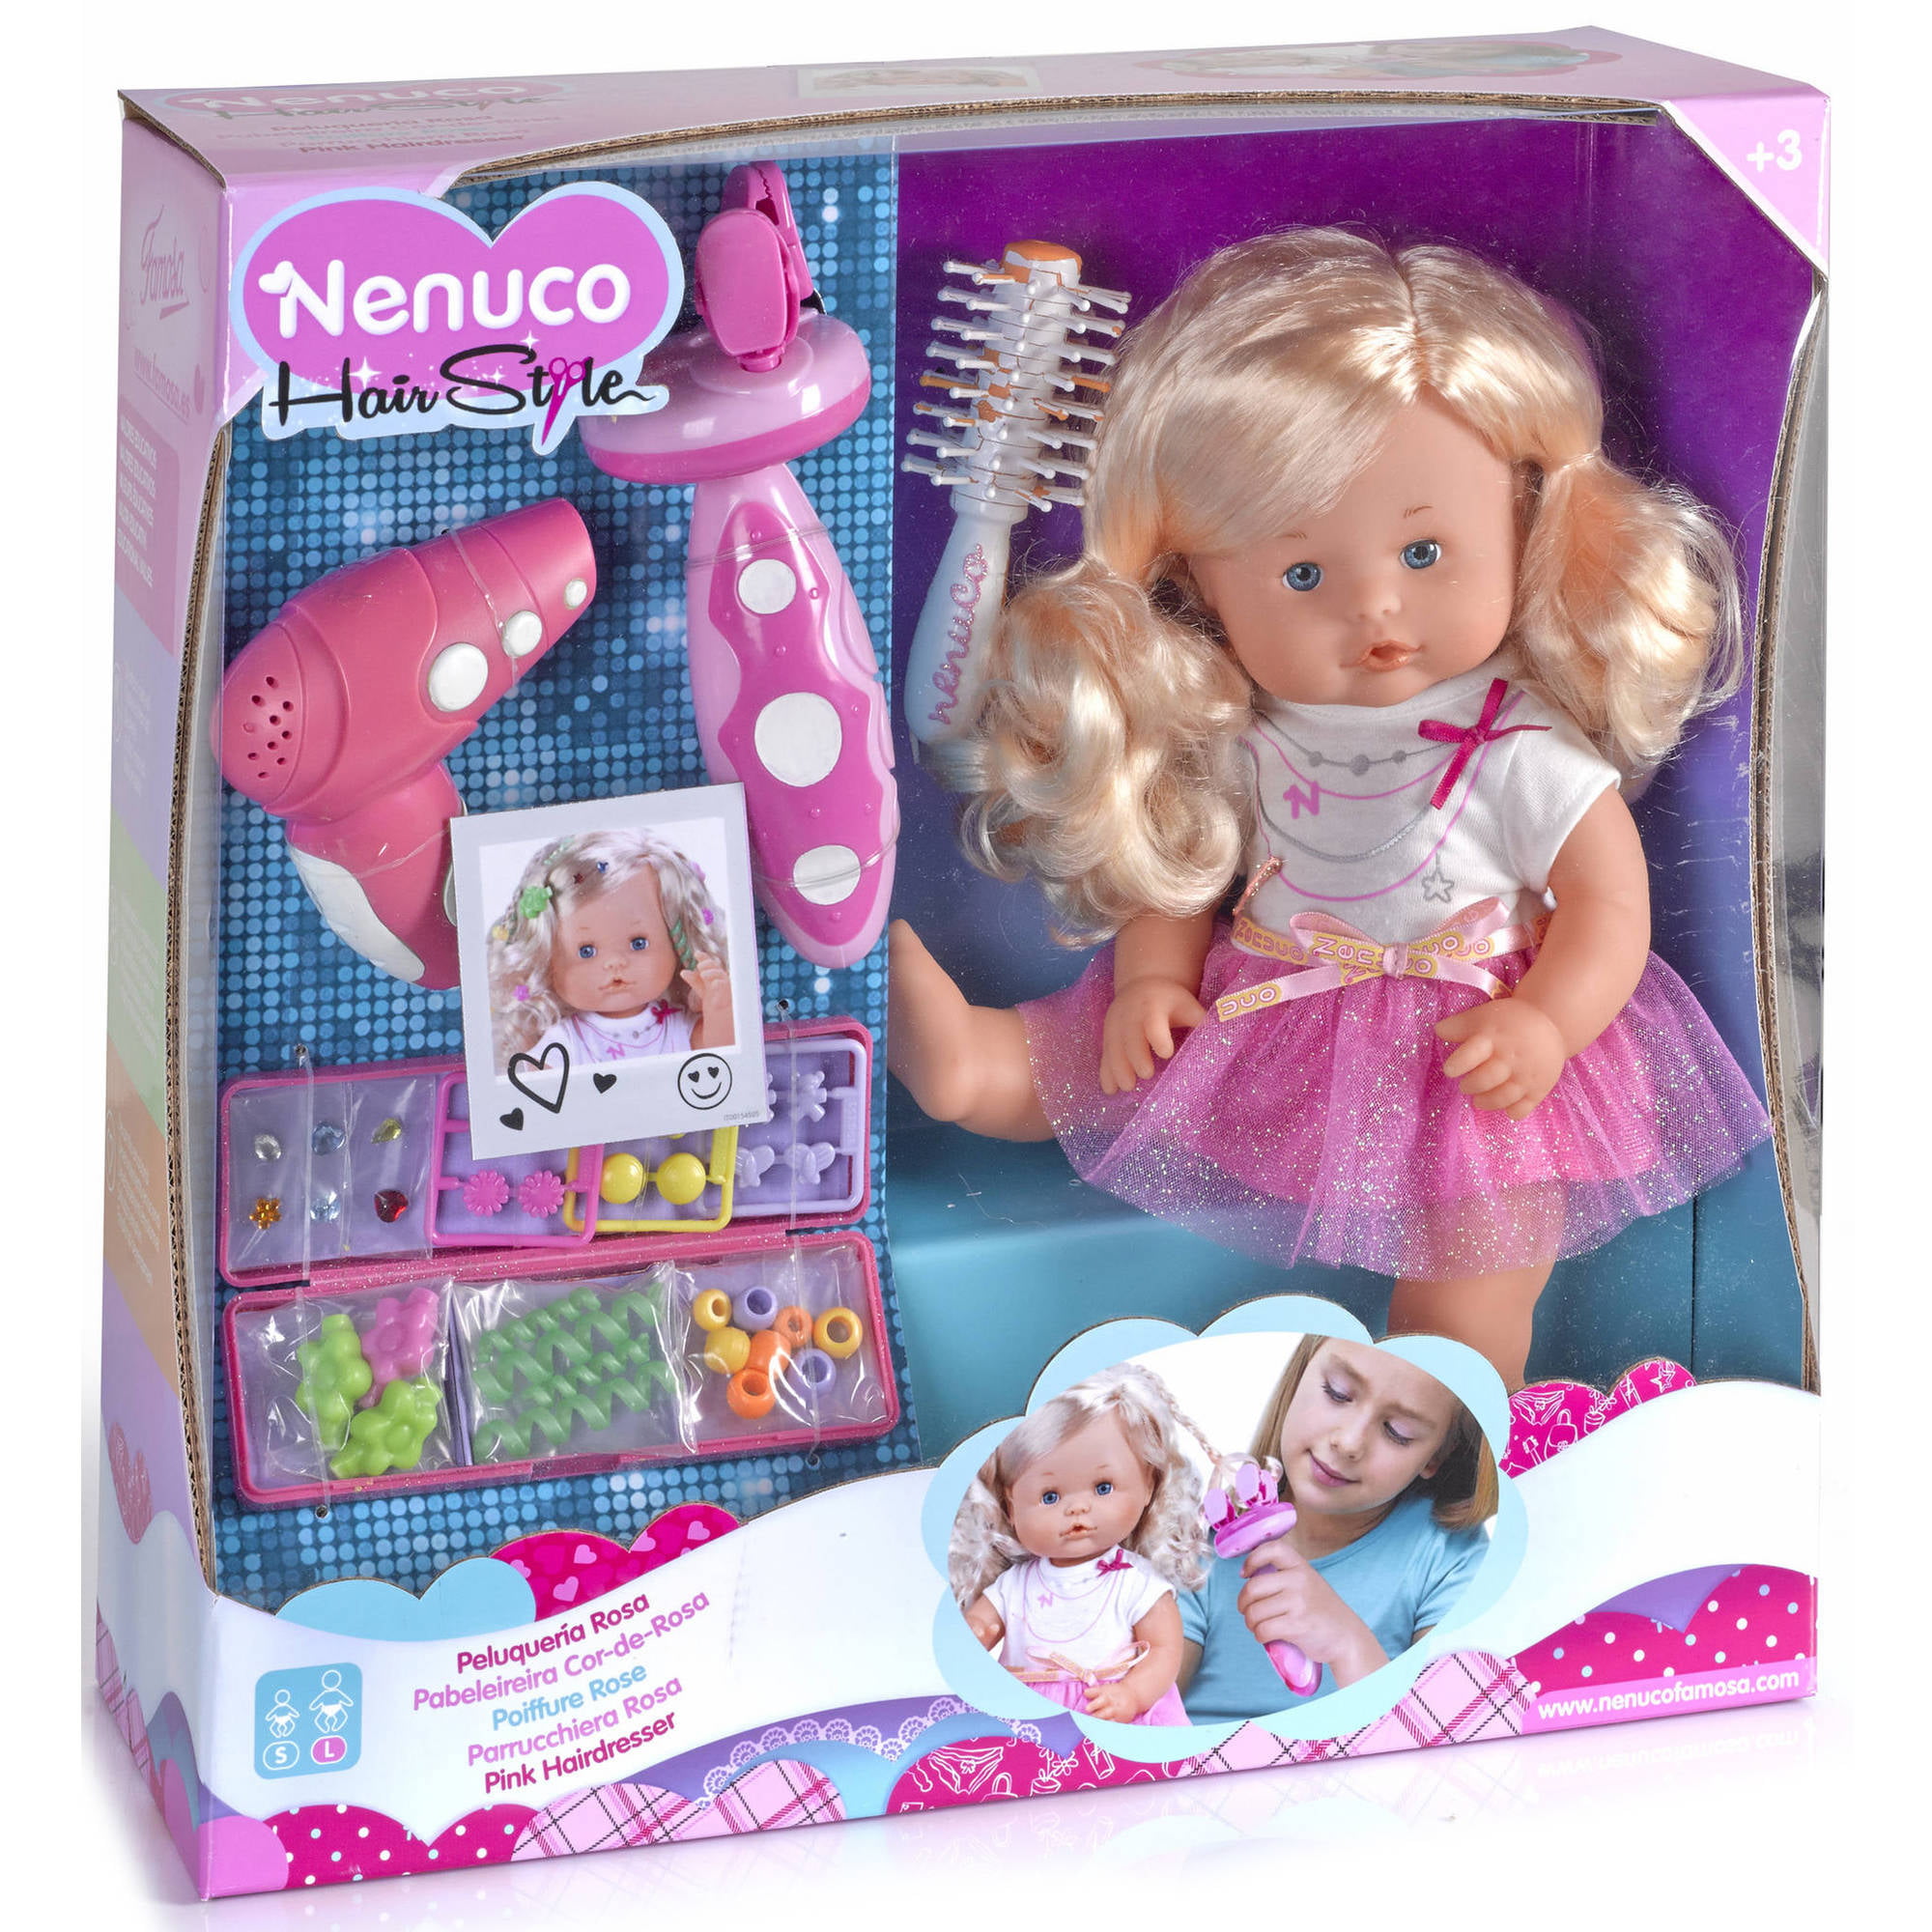 Nenuco Hairdresser Doll Set Walmart Com Walmart Com